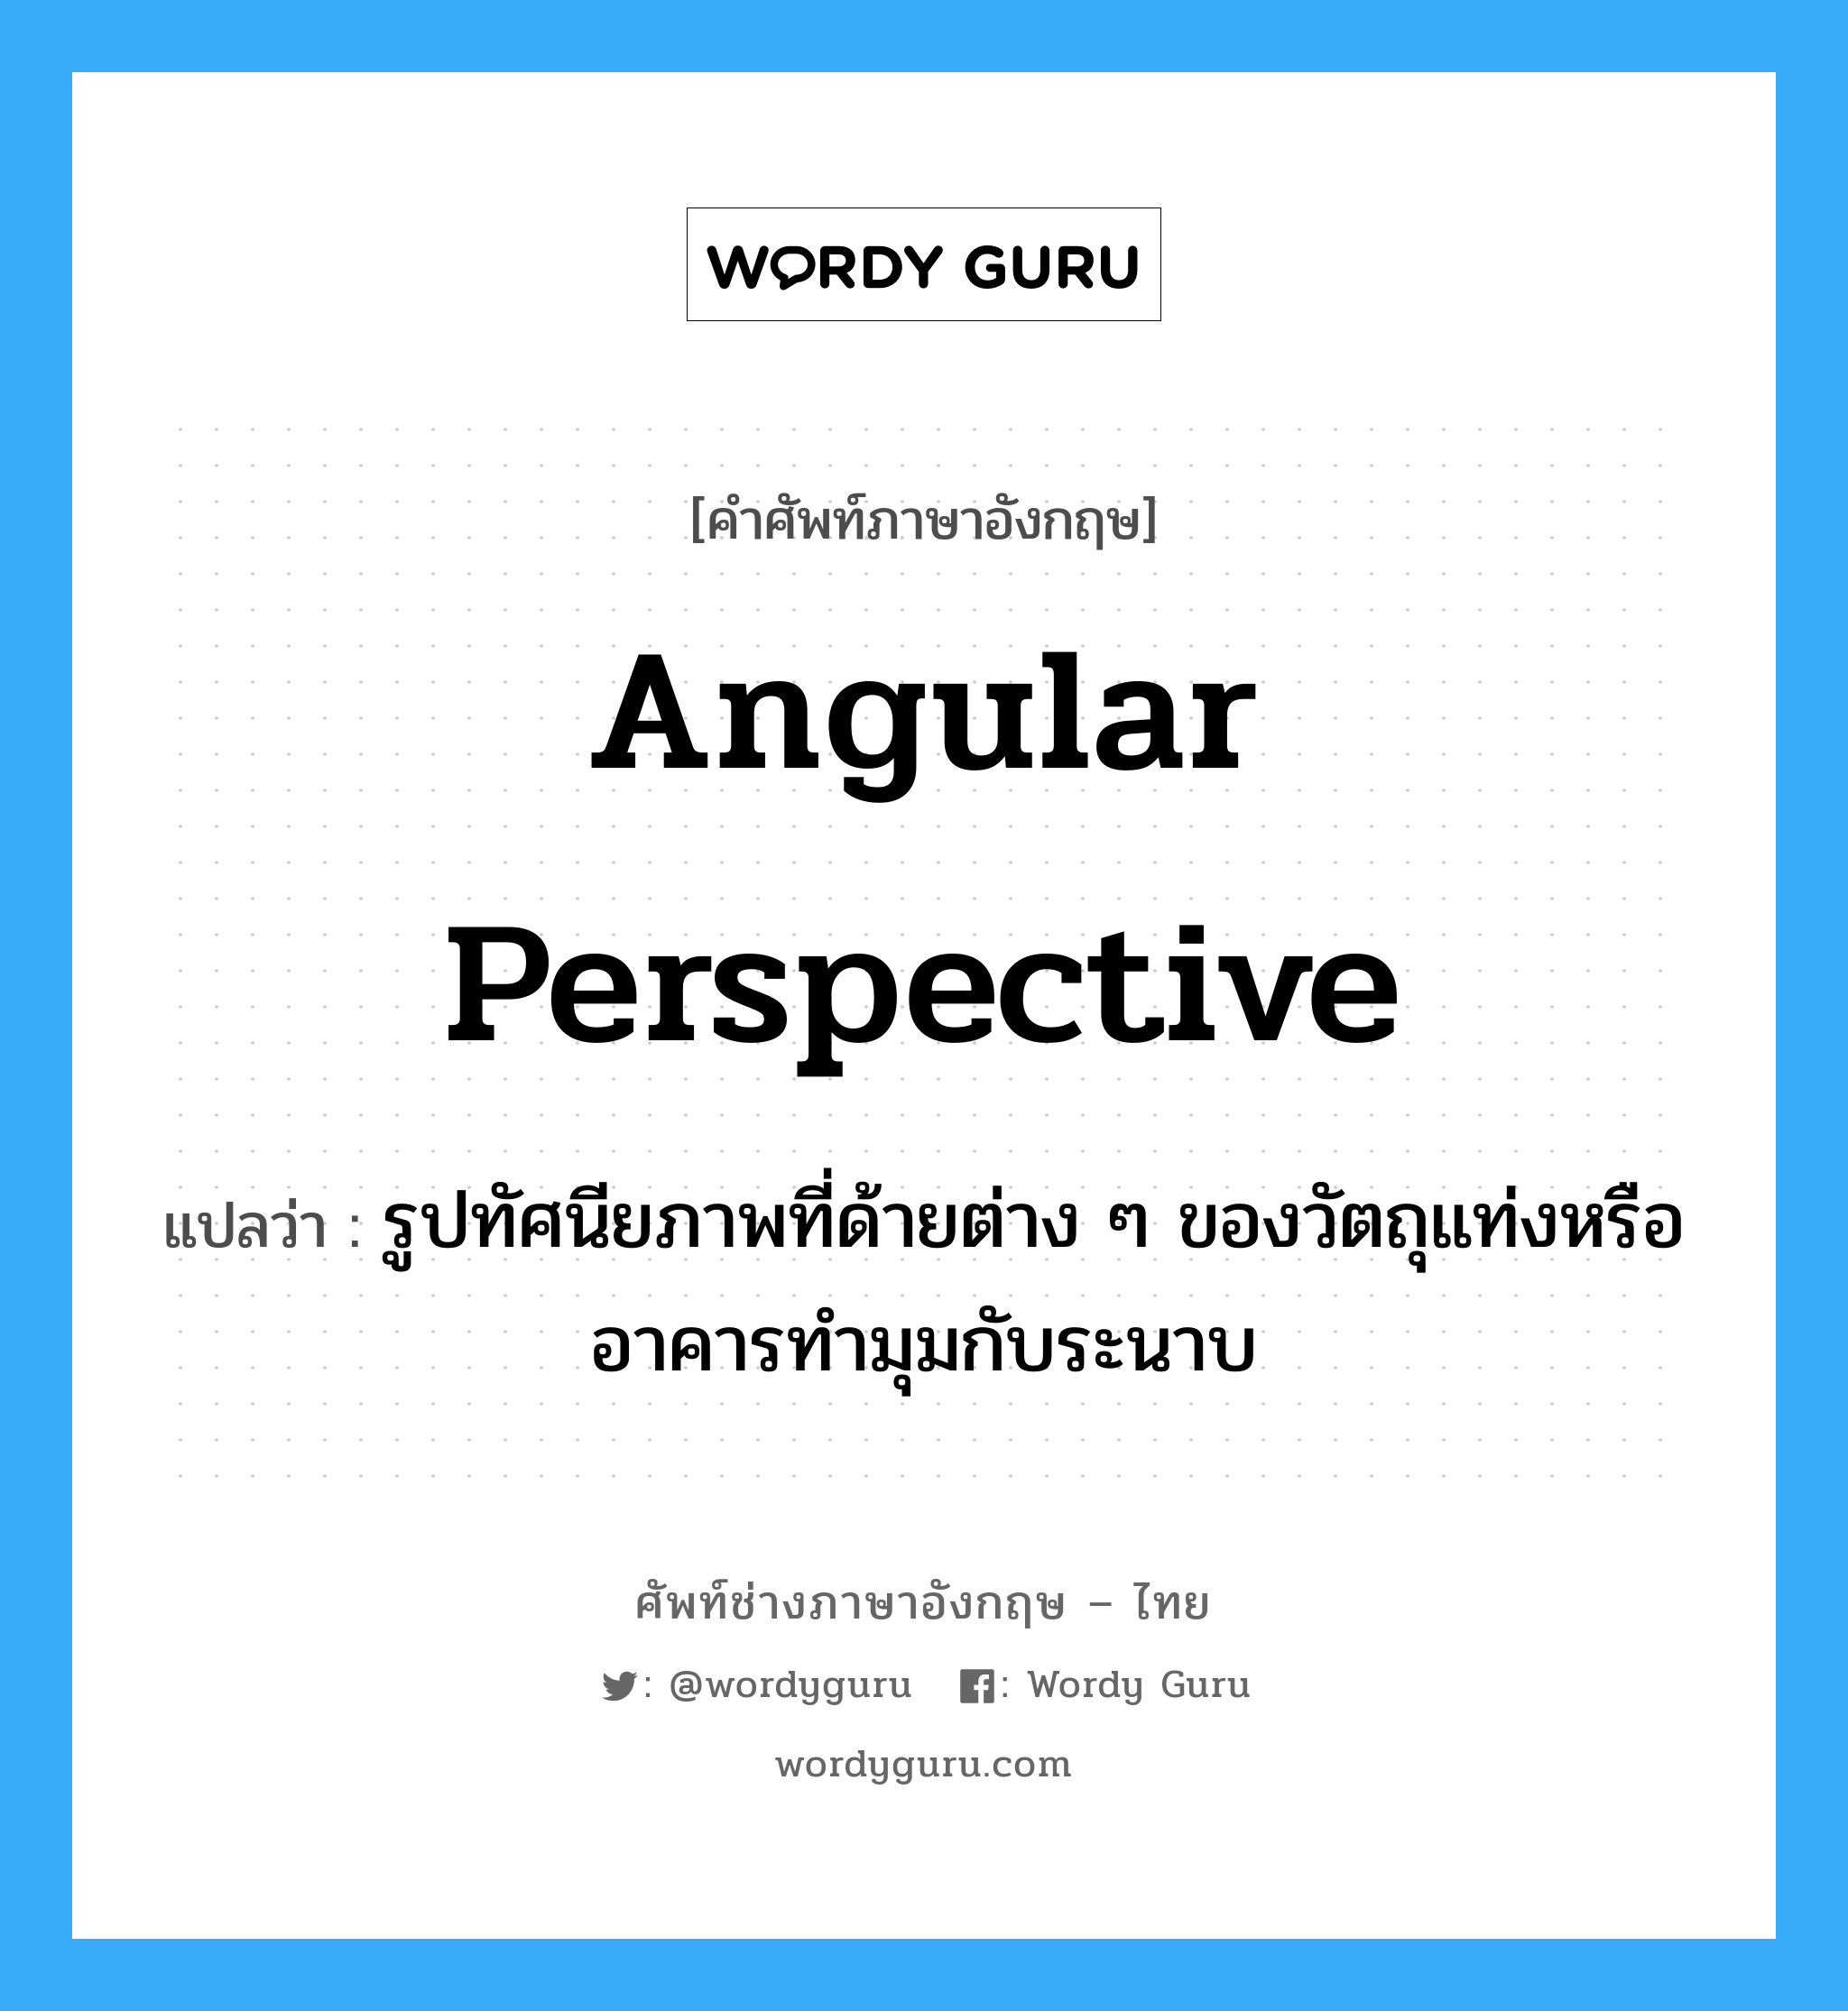 angular perspective แปลว่า?, คำศัพท์ช่างภาษาอังกฤษ - ไทย angular perspective คำศัพท์ภาษาอังกฤษ angular perspective แปลว่า รูปทัศนียภาพที่ด้ายต่าง ๆ ของวัตถุแท่งหรืออาคารทำมุมกับระนาบ